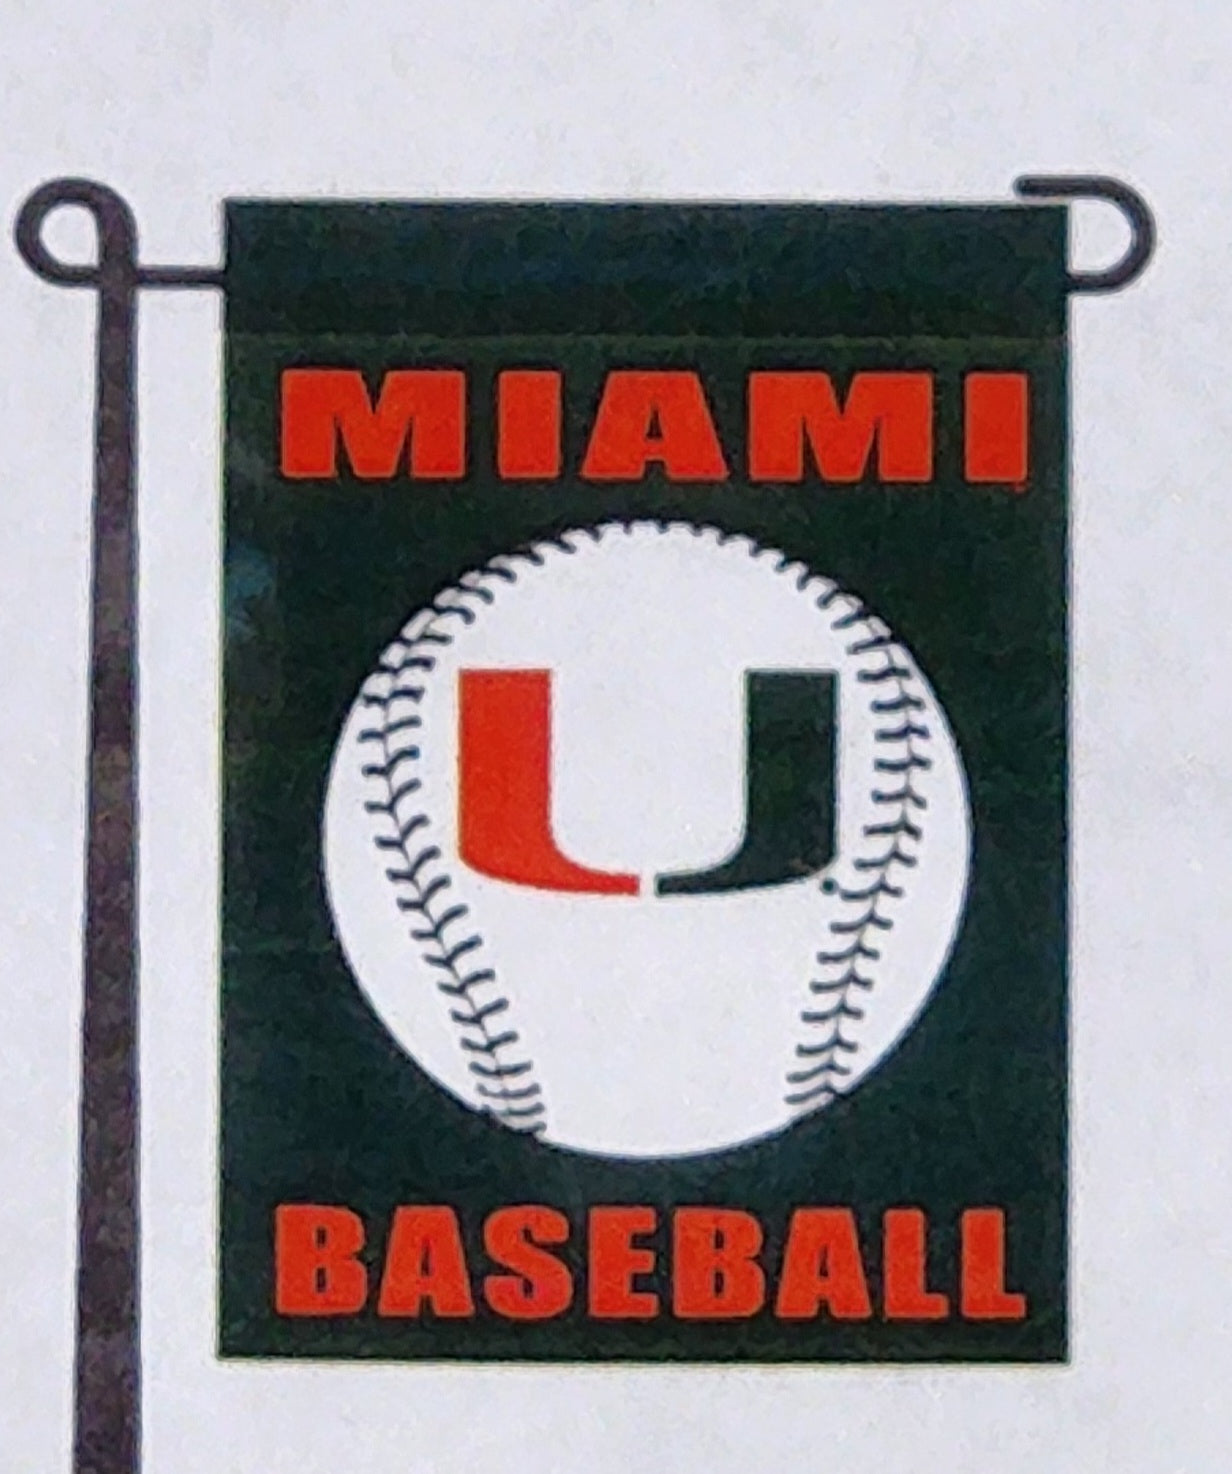 Miami Hurricanes Baseball 13" x 18" Garden Flag - Green